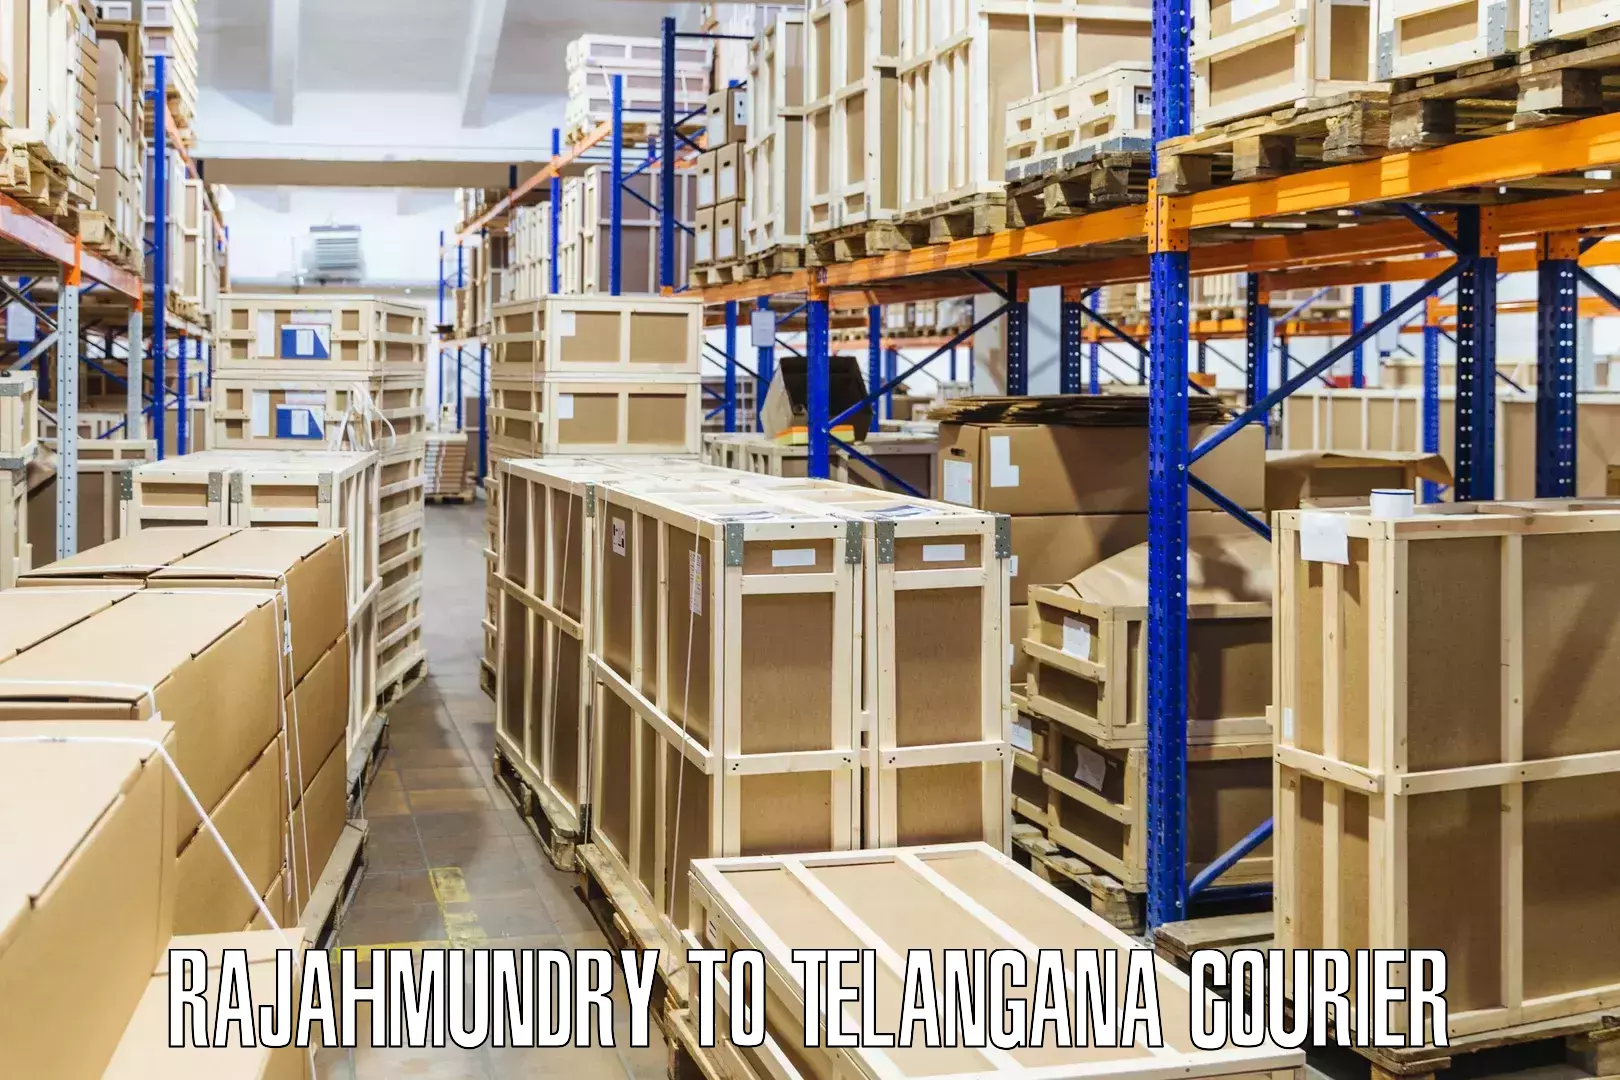 Sustainable shipping practices Rajahmundry to Yellandu